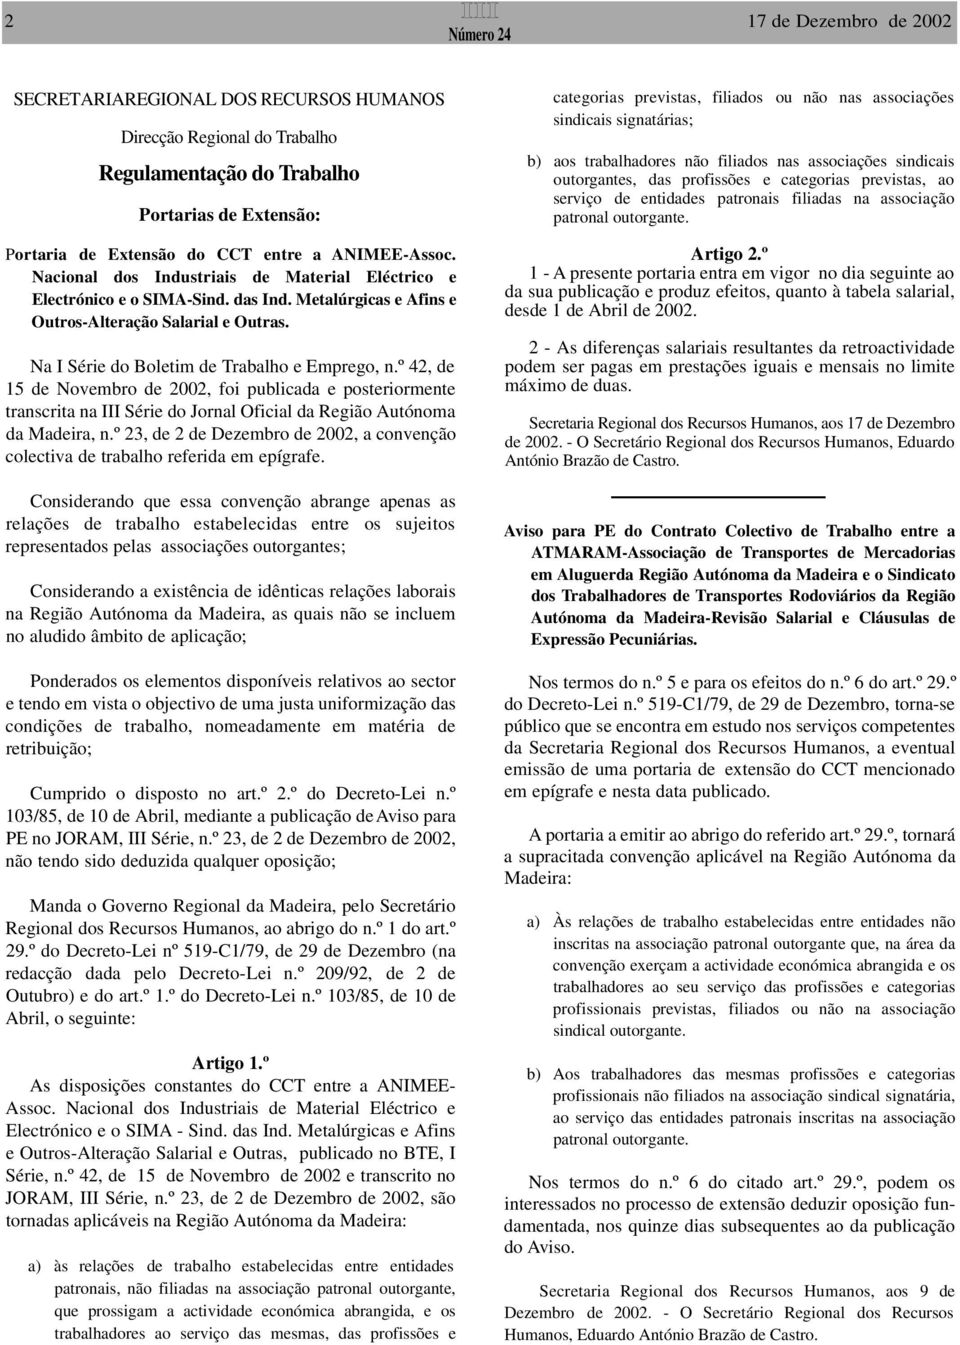 Na I Série do Boletim de Trabalho e Emprego, n.º 42, de 15 de Novembro de 2002, foi publicada e posteriormente transcrita na III Série do Jornal Oficial da Região Autónoma da Madeira, n.